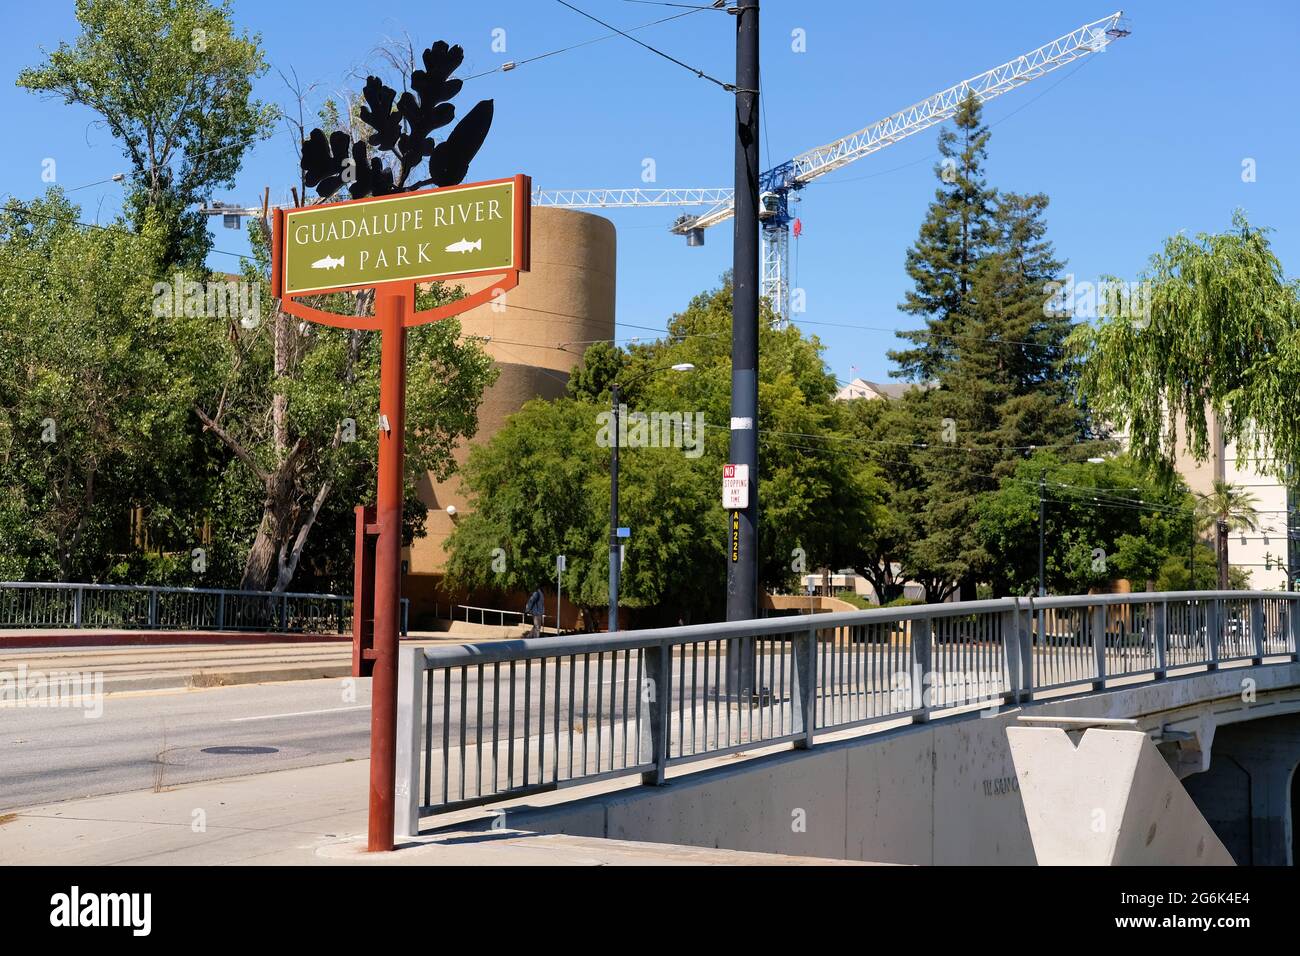 Schild Guadalupe River Park neben dem Park in der Innenstadt von San Jose, Kalifornien; Veranstaltungsort für Outdoor-Erholung und Festivals im Silicon Valley. Stockfoto